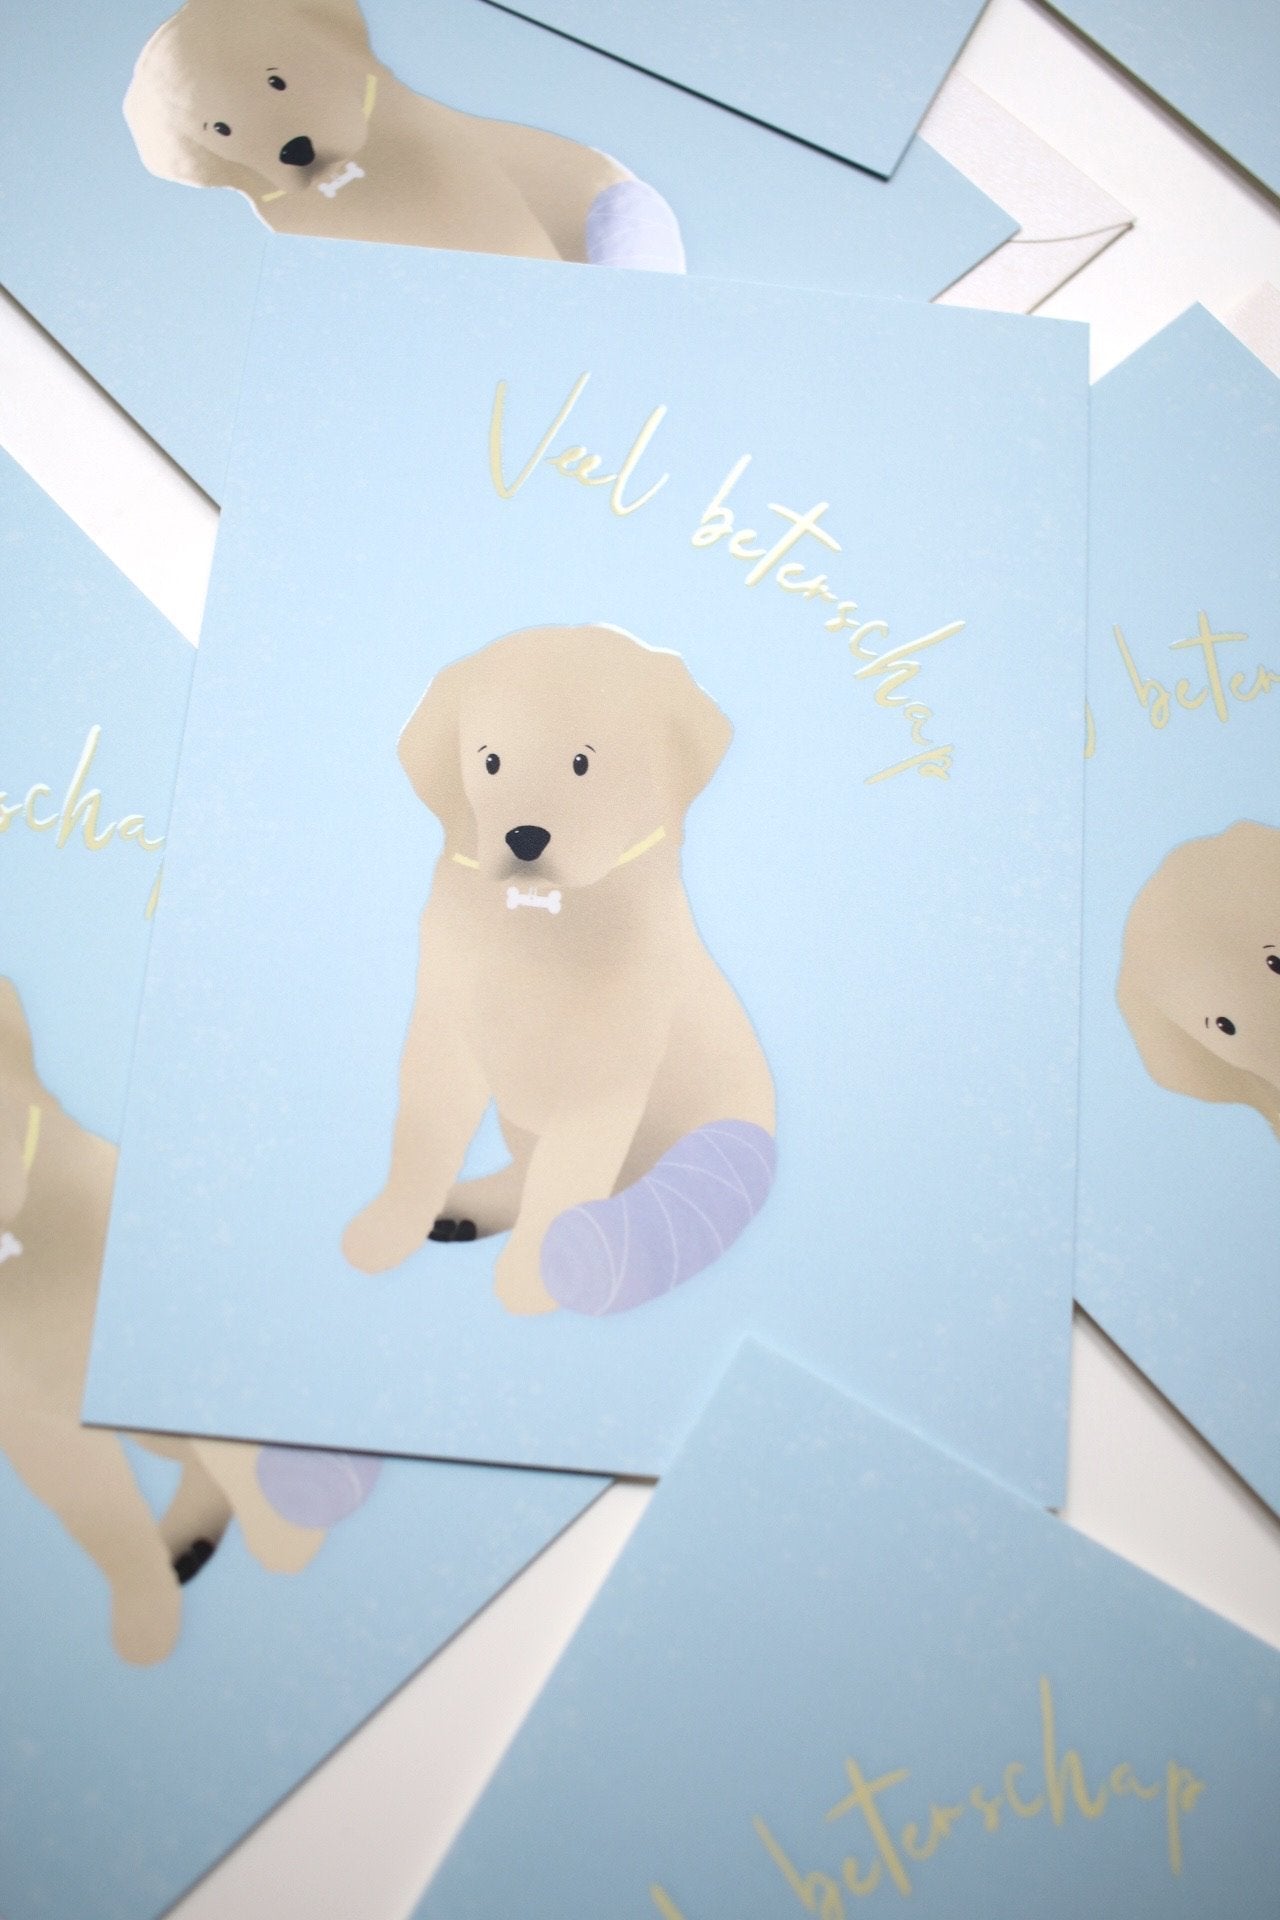 Veel Beterschap Puppy Greeting Cards - Honeypress Design